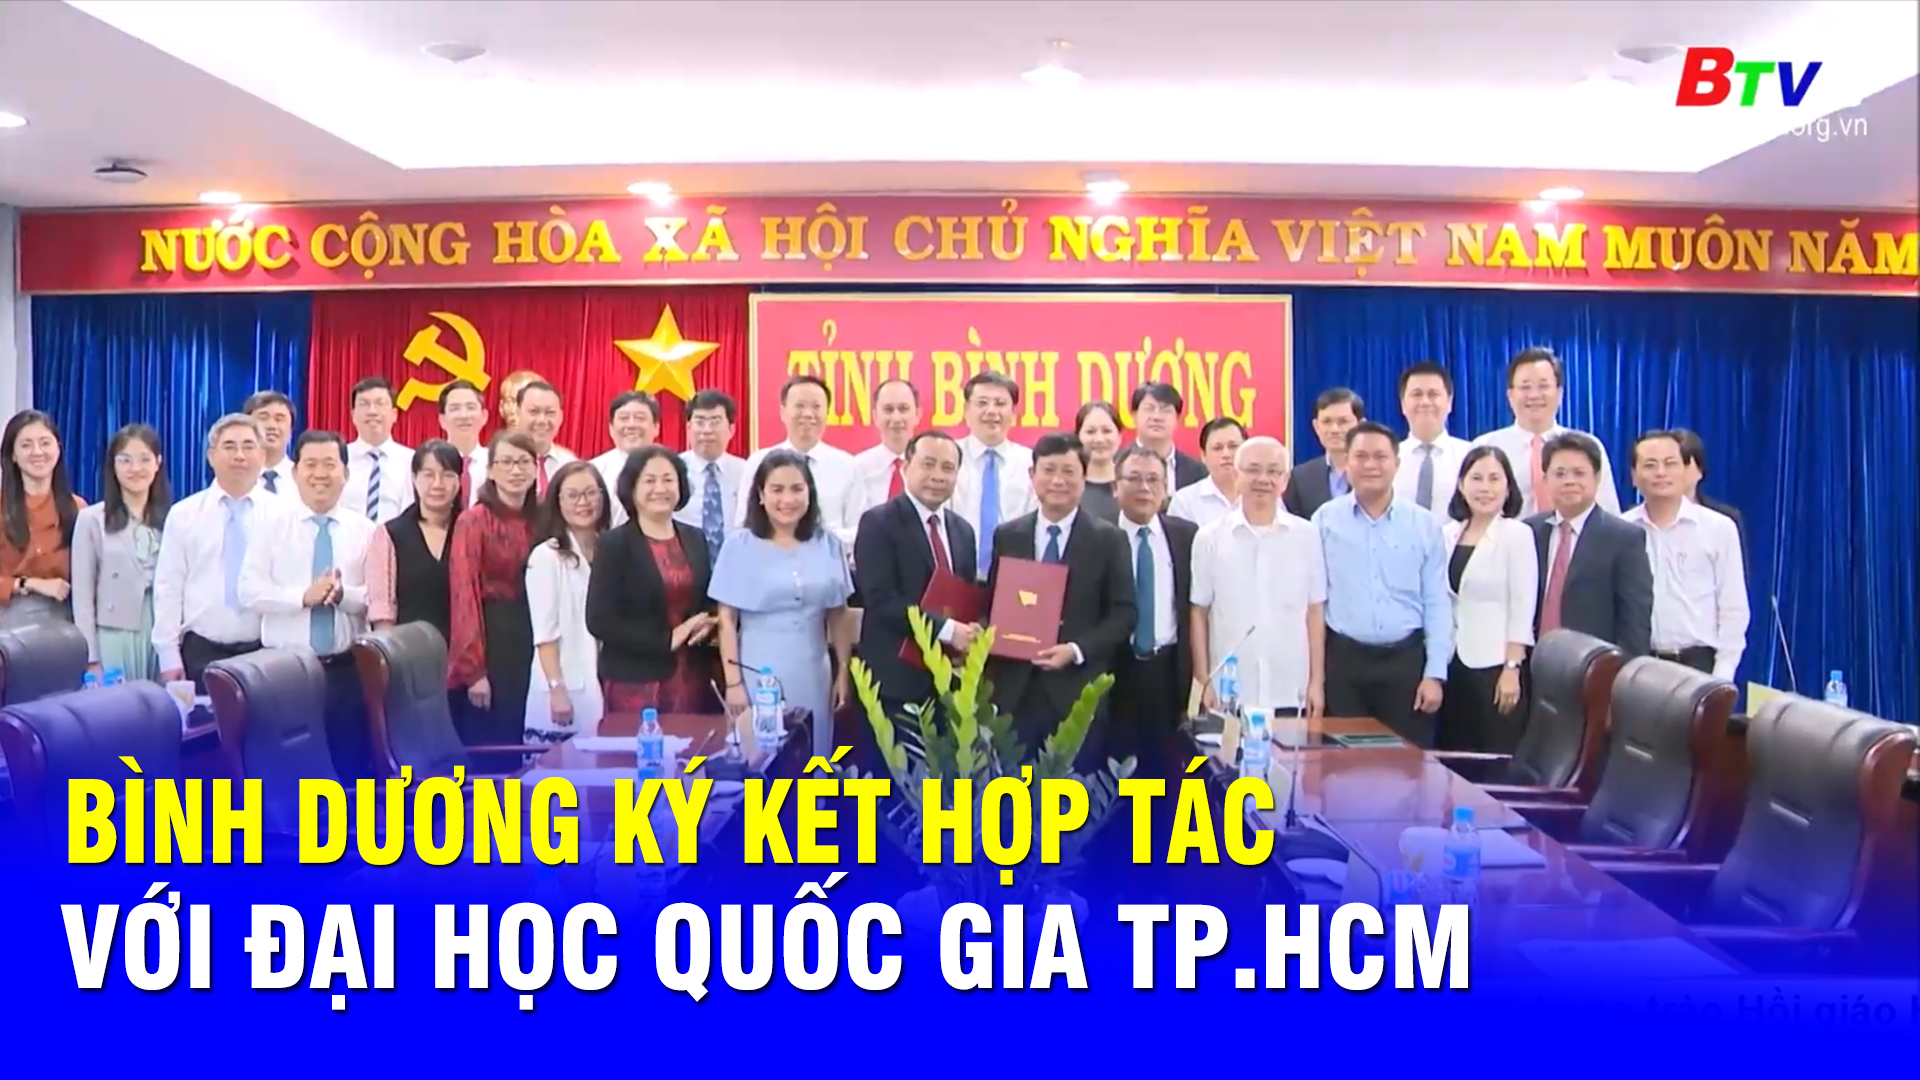 Bình Dương ký kết hợp tác với Đại học Quốc gia thành phố Hồ Chí Minh